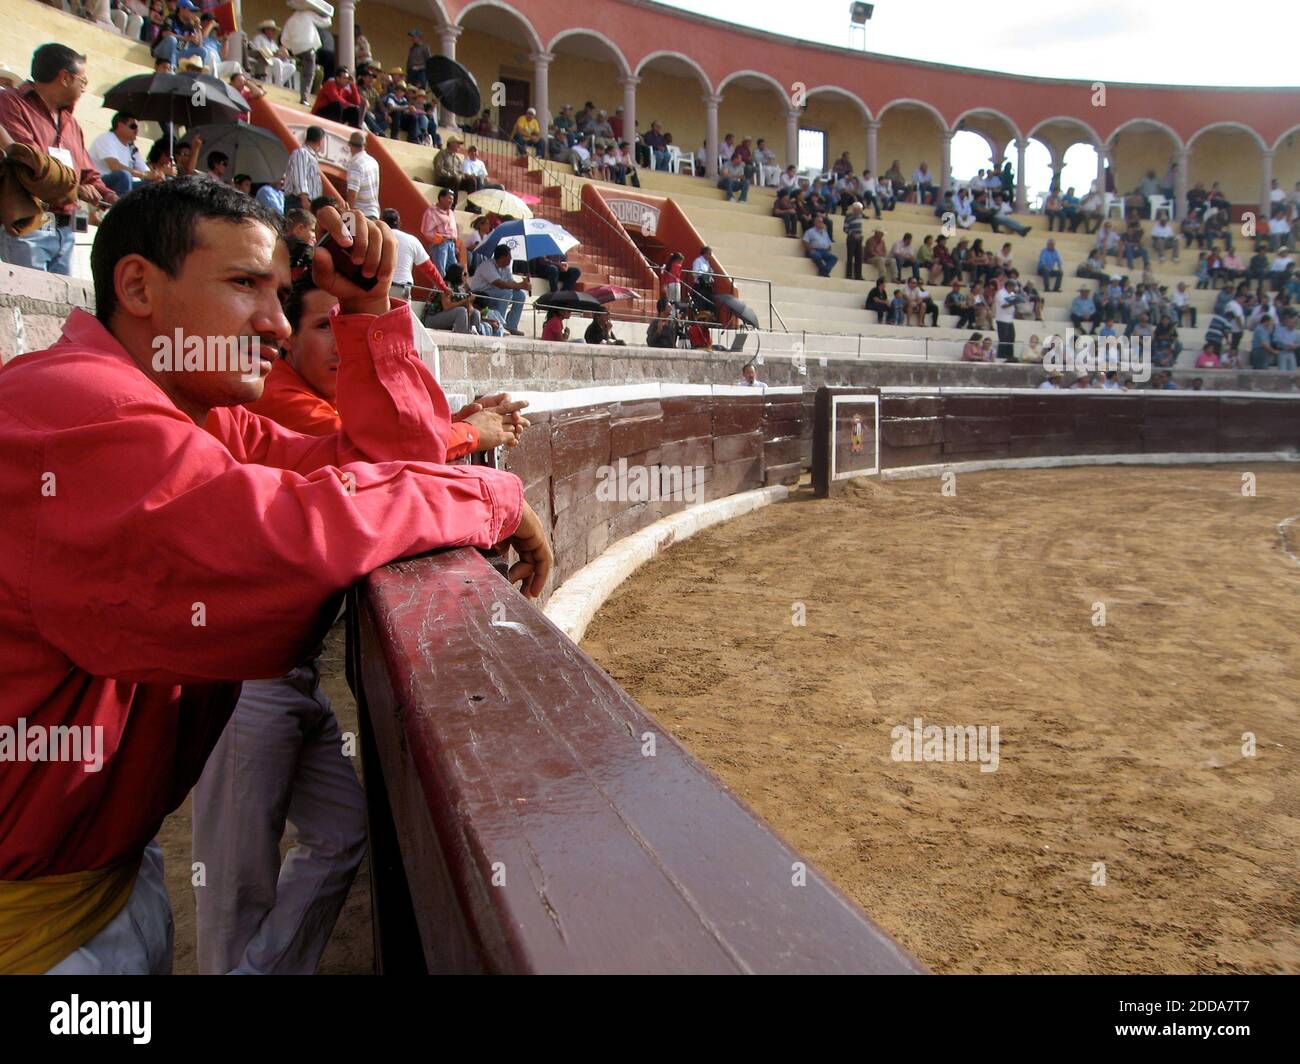 NO HAY PELÍCULA, NO HAY VIDEO, NO hay televisión, NO HAY DOCUMENTAL - en  una soleada tarde en el estado de Jalisco, los aficionados entran en una  plaza de toros para ver